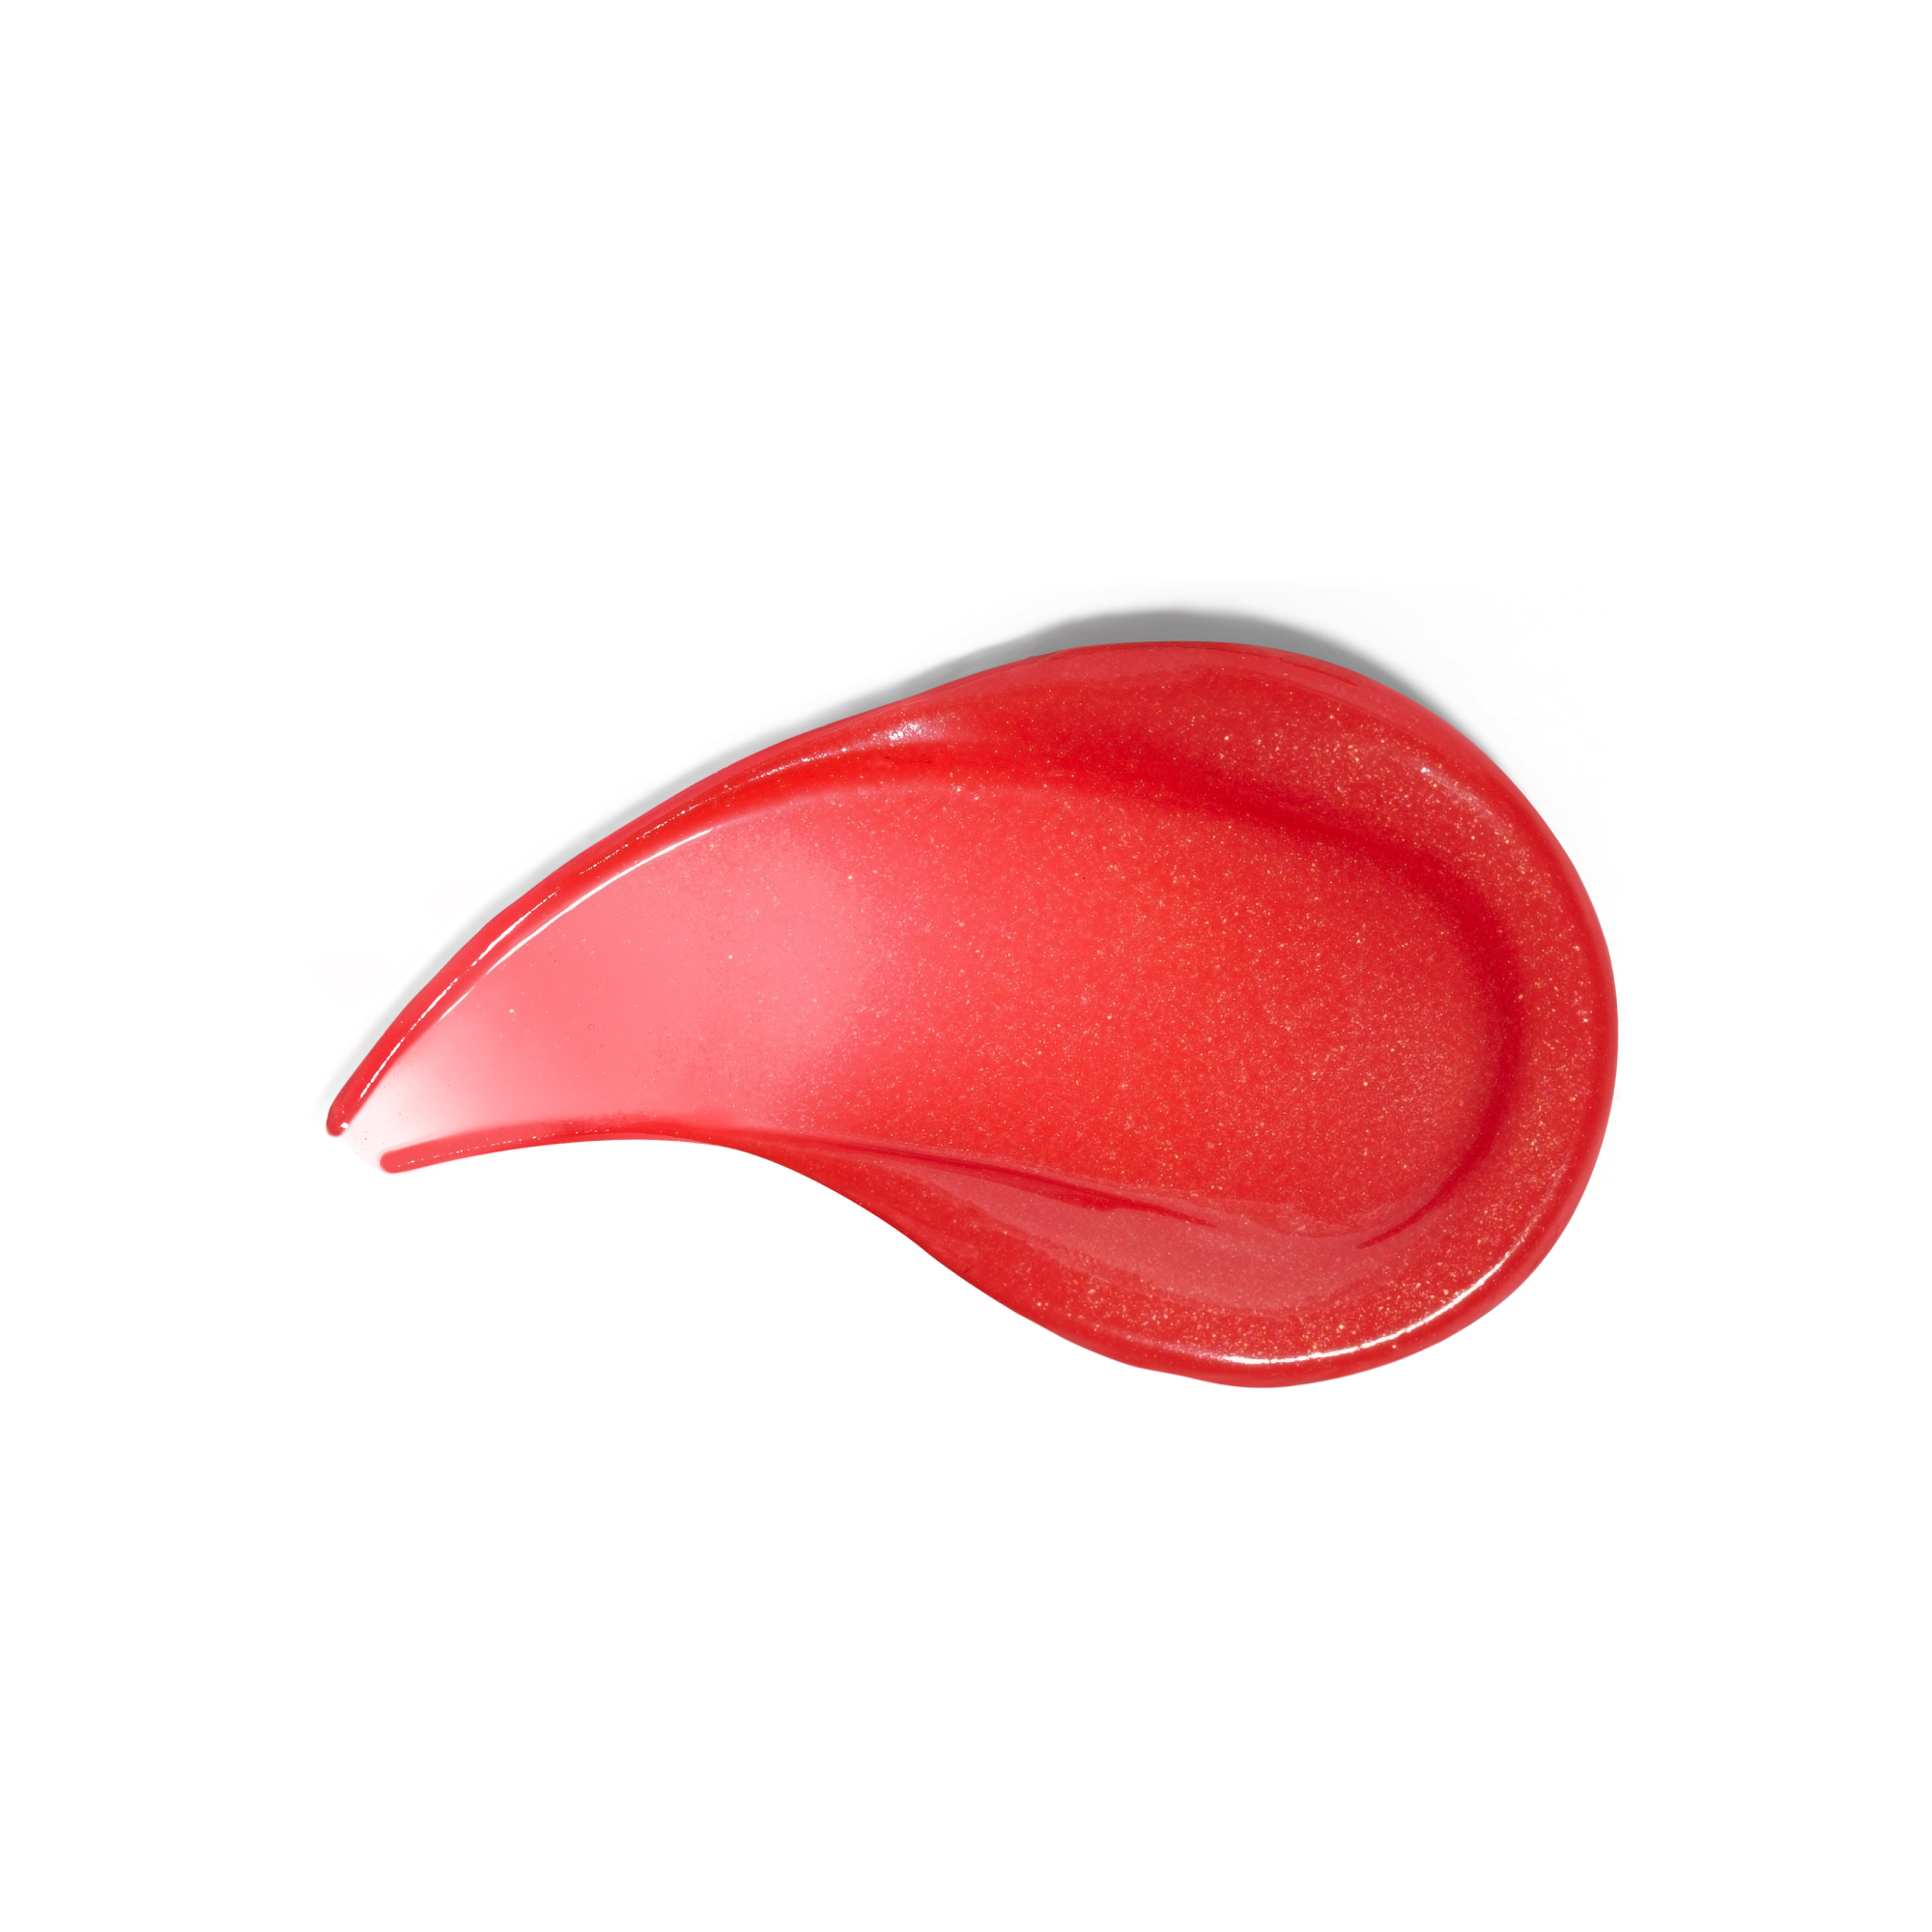 Benefit Cosmetics Lip Butter Balm, in Colour: Treasure Island, Size: 10.0 ml